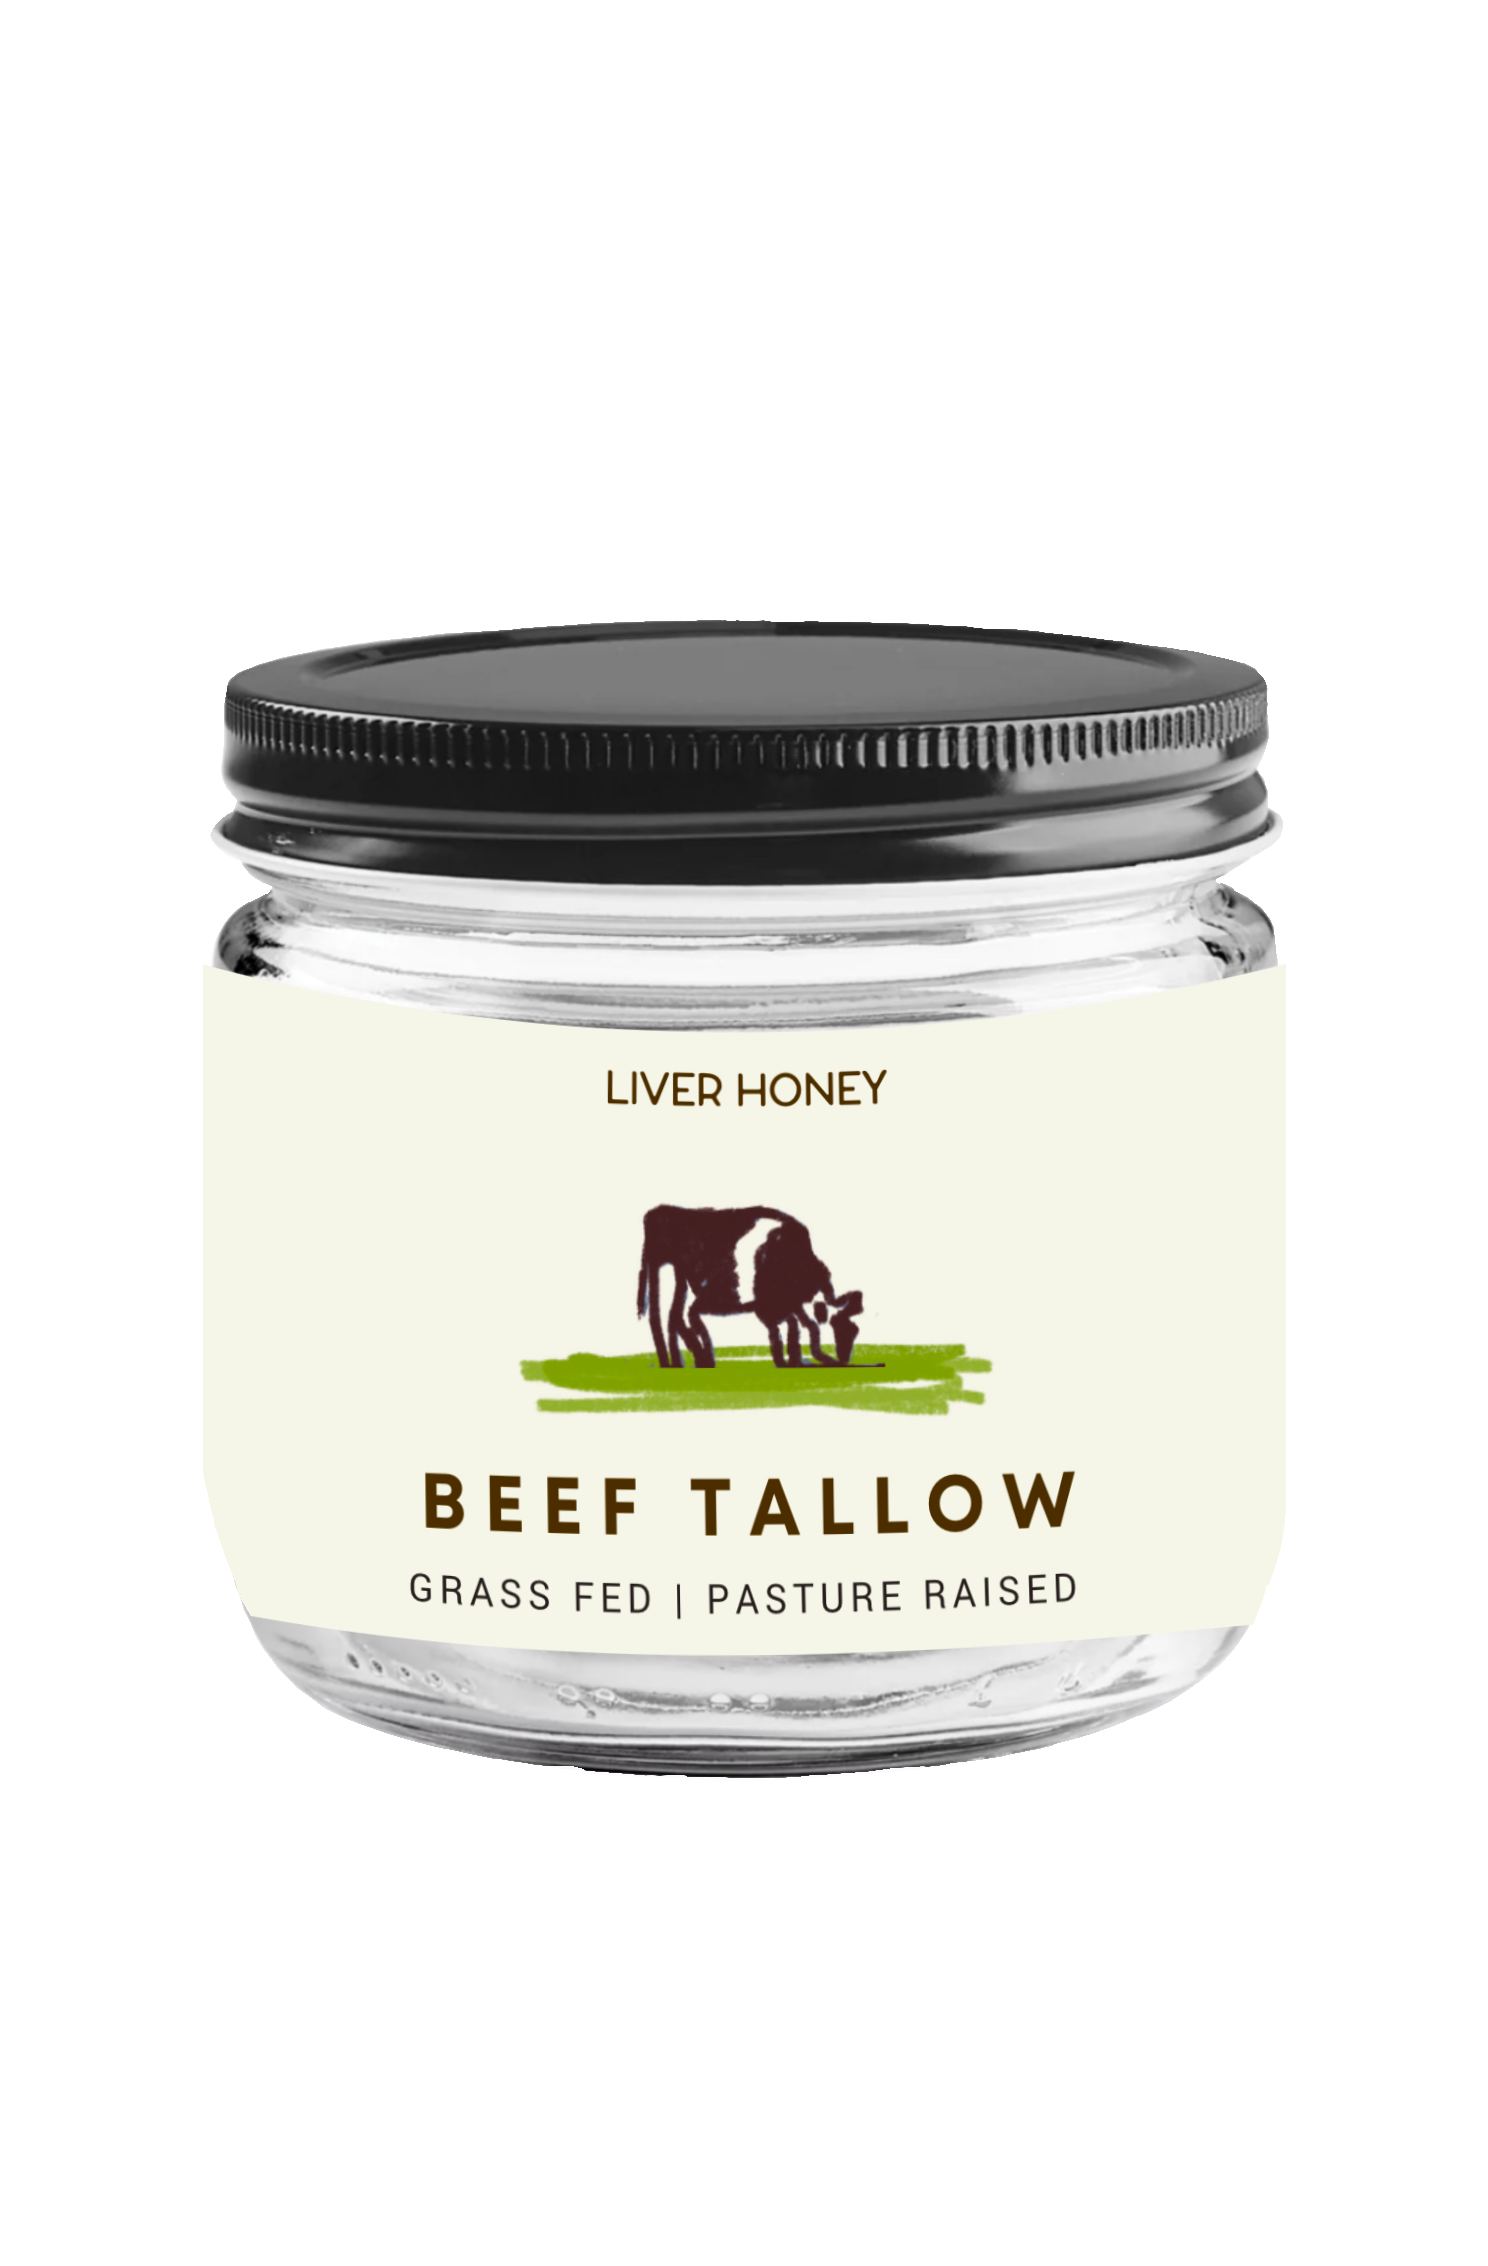 Grass-fed Beef Tallow